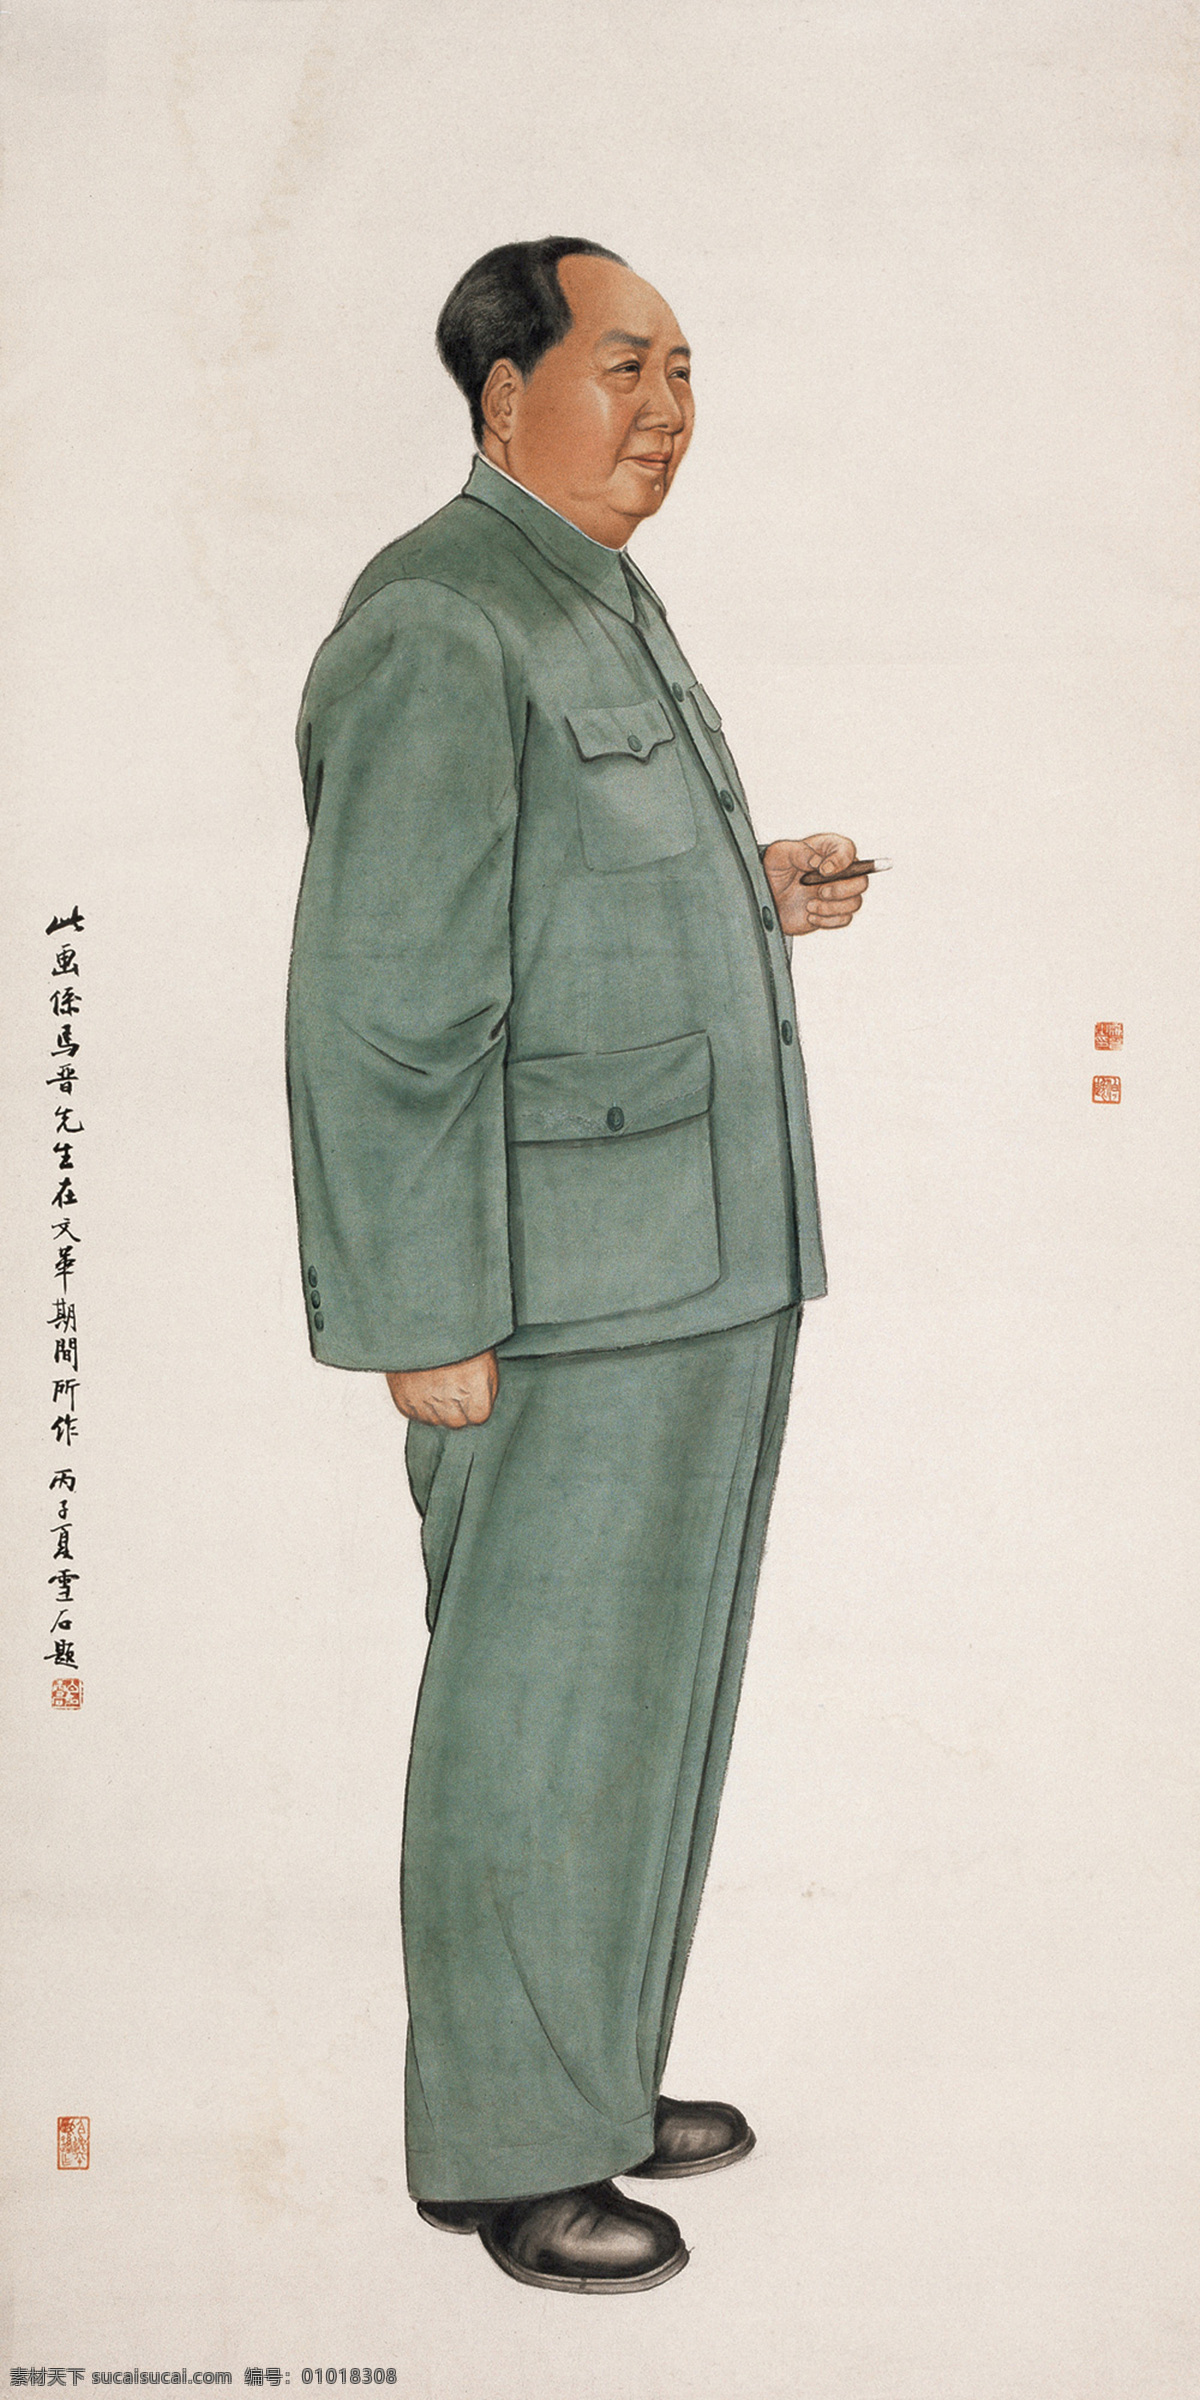 毛主席画像 毛泽东 伟人 名人 共产党 领袖 威望 国画 马晋 工笔 人物 绘画书法 文化艺术